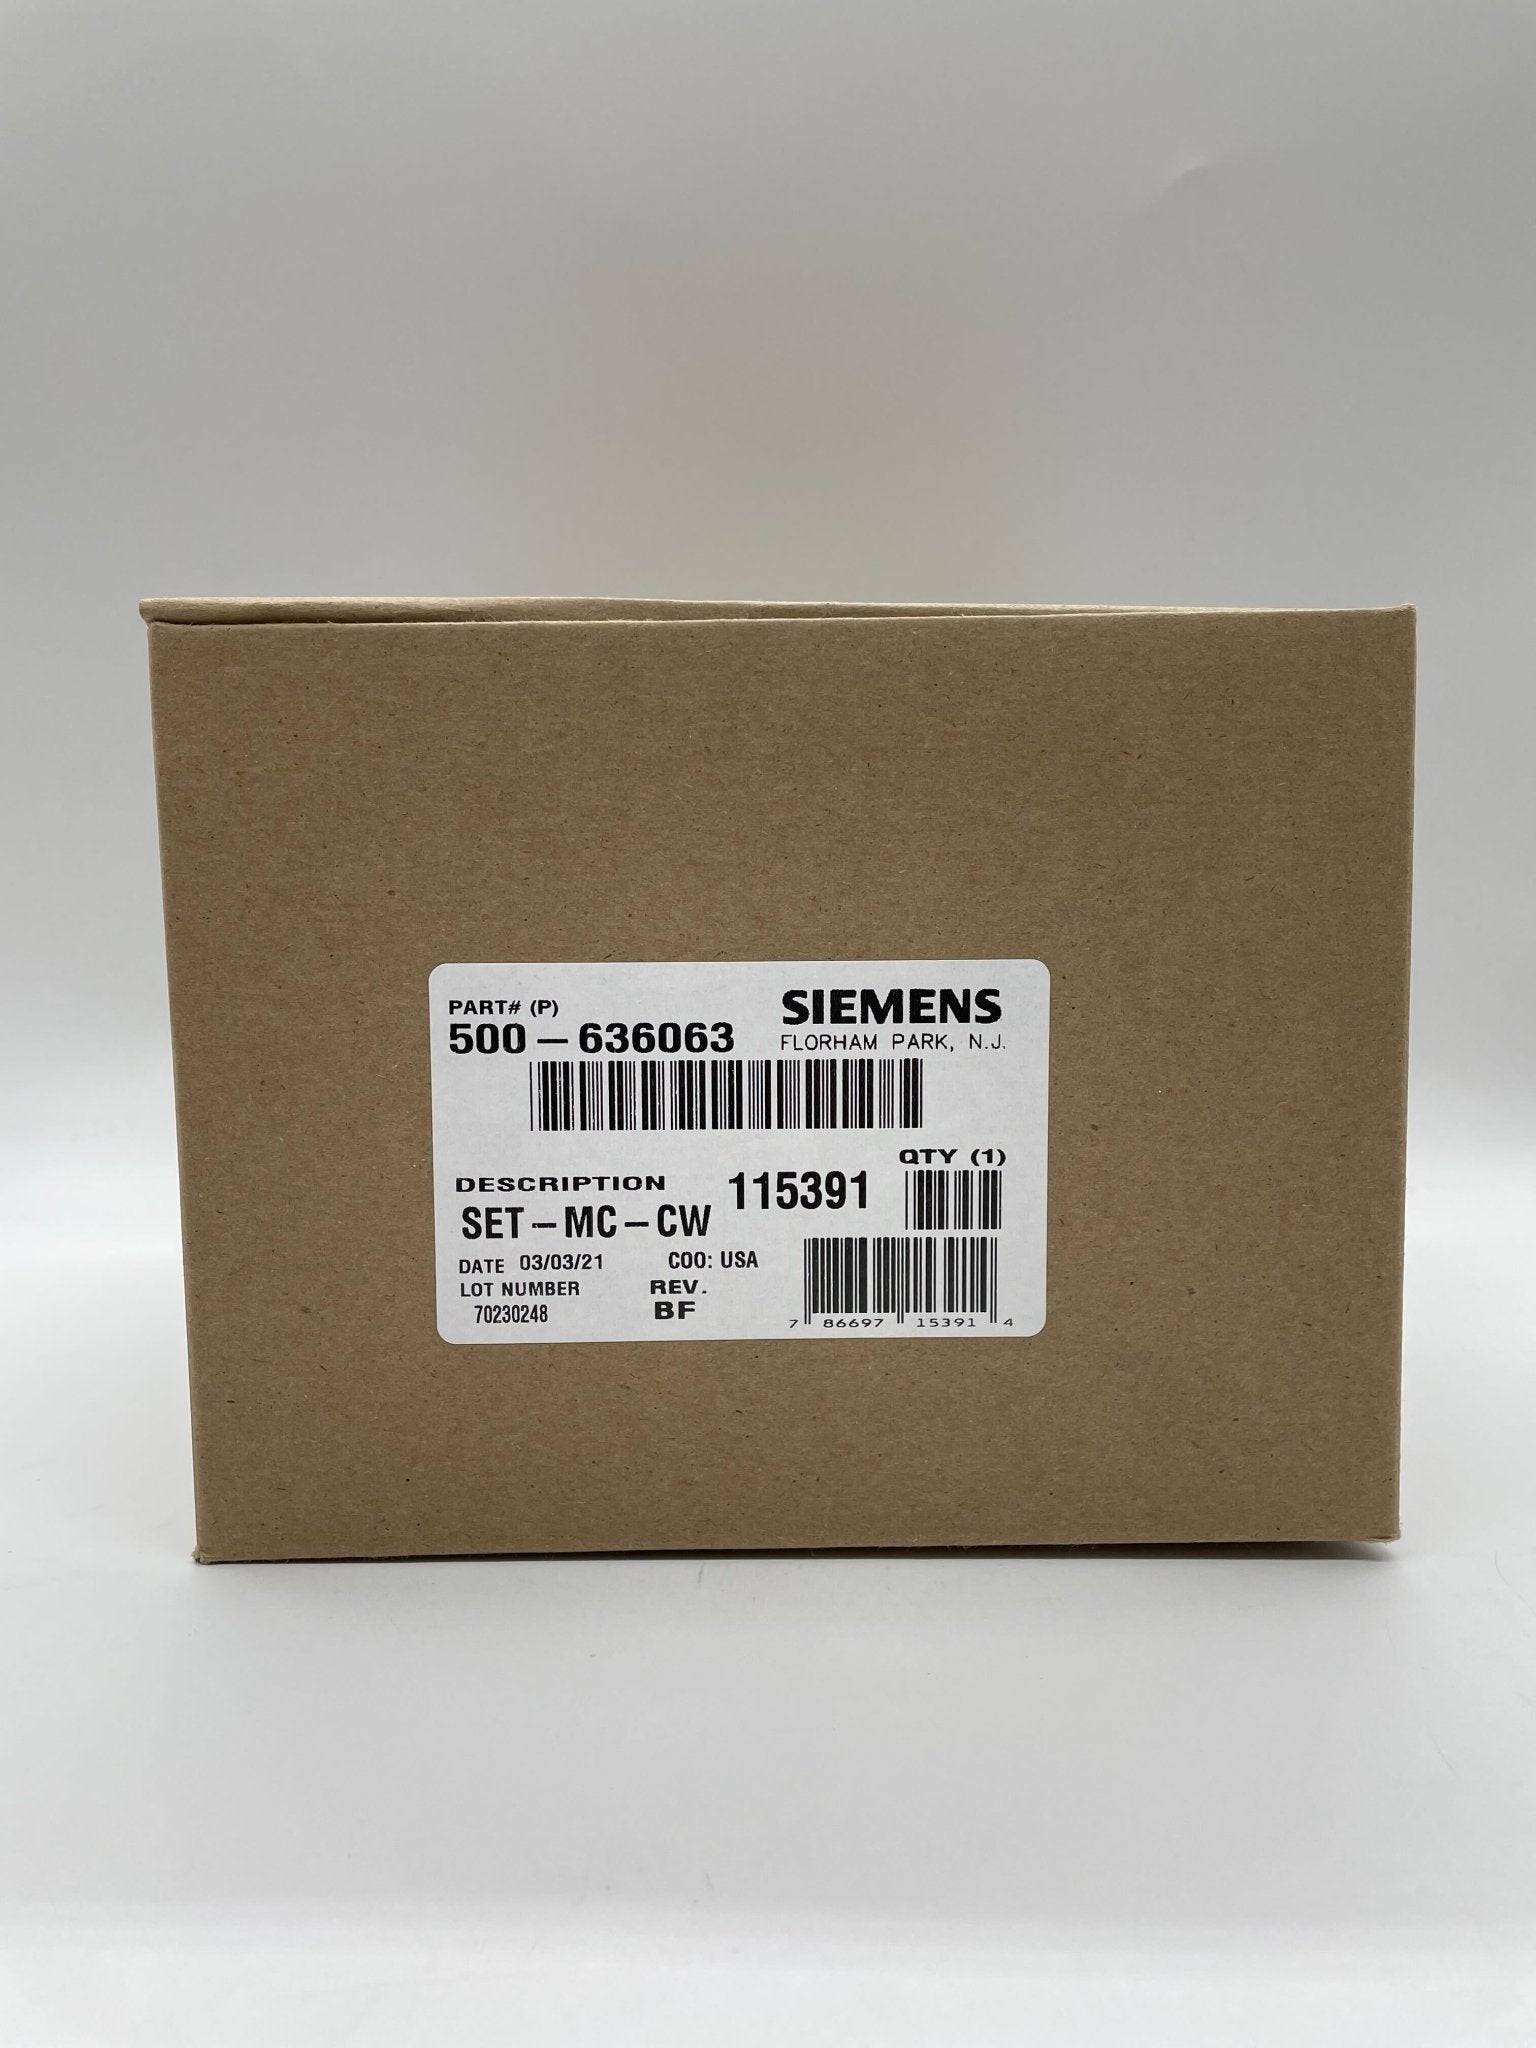 Siemens SET-MC-CW Speaker Strobe For Ceiling - The Fire Alarm Supplier